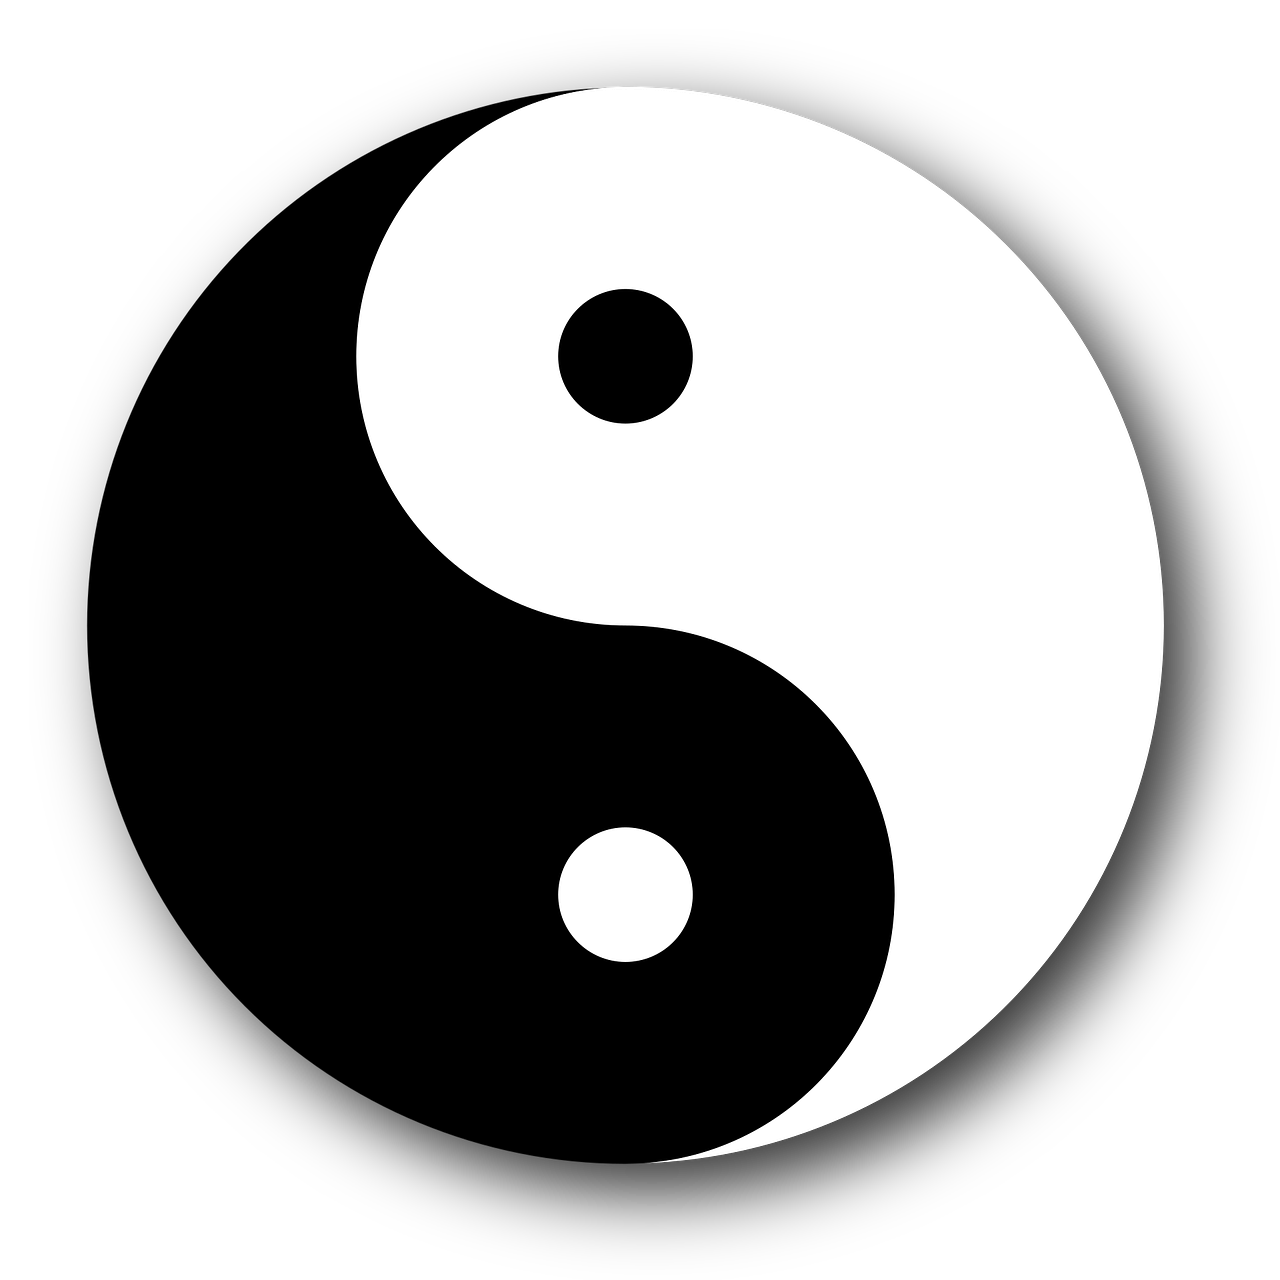 Download Yin Yang Yin And Yang Yin Yang Symbol. Royalty Free Vector Graphic